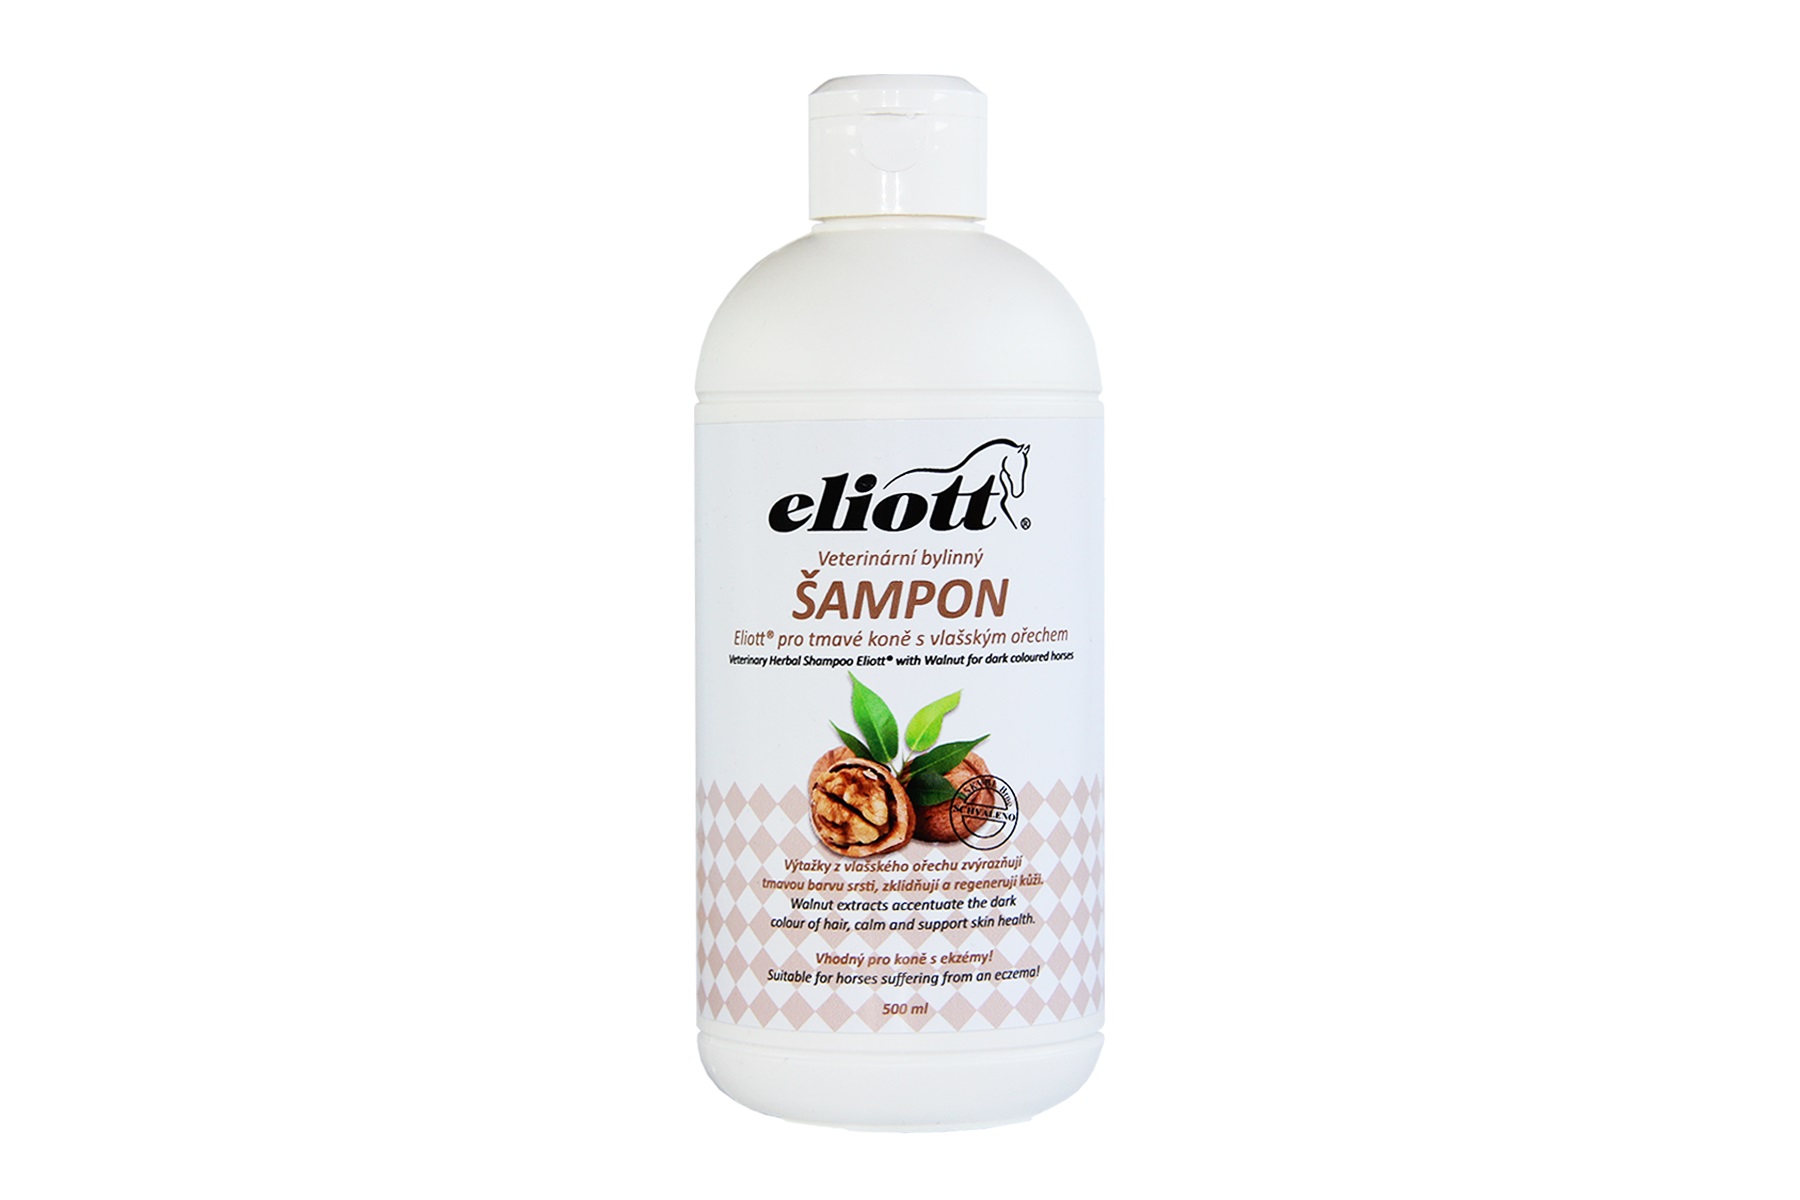 šampón ELIOTT veterinární bylinný s vlašským ořechem